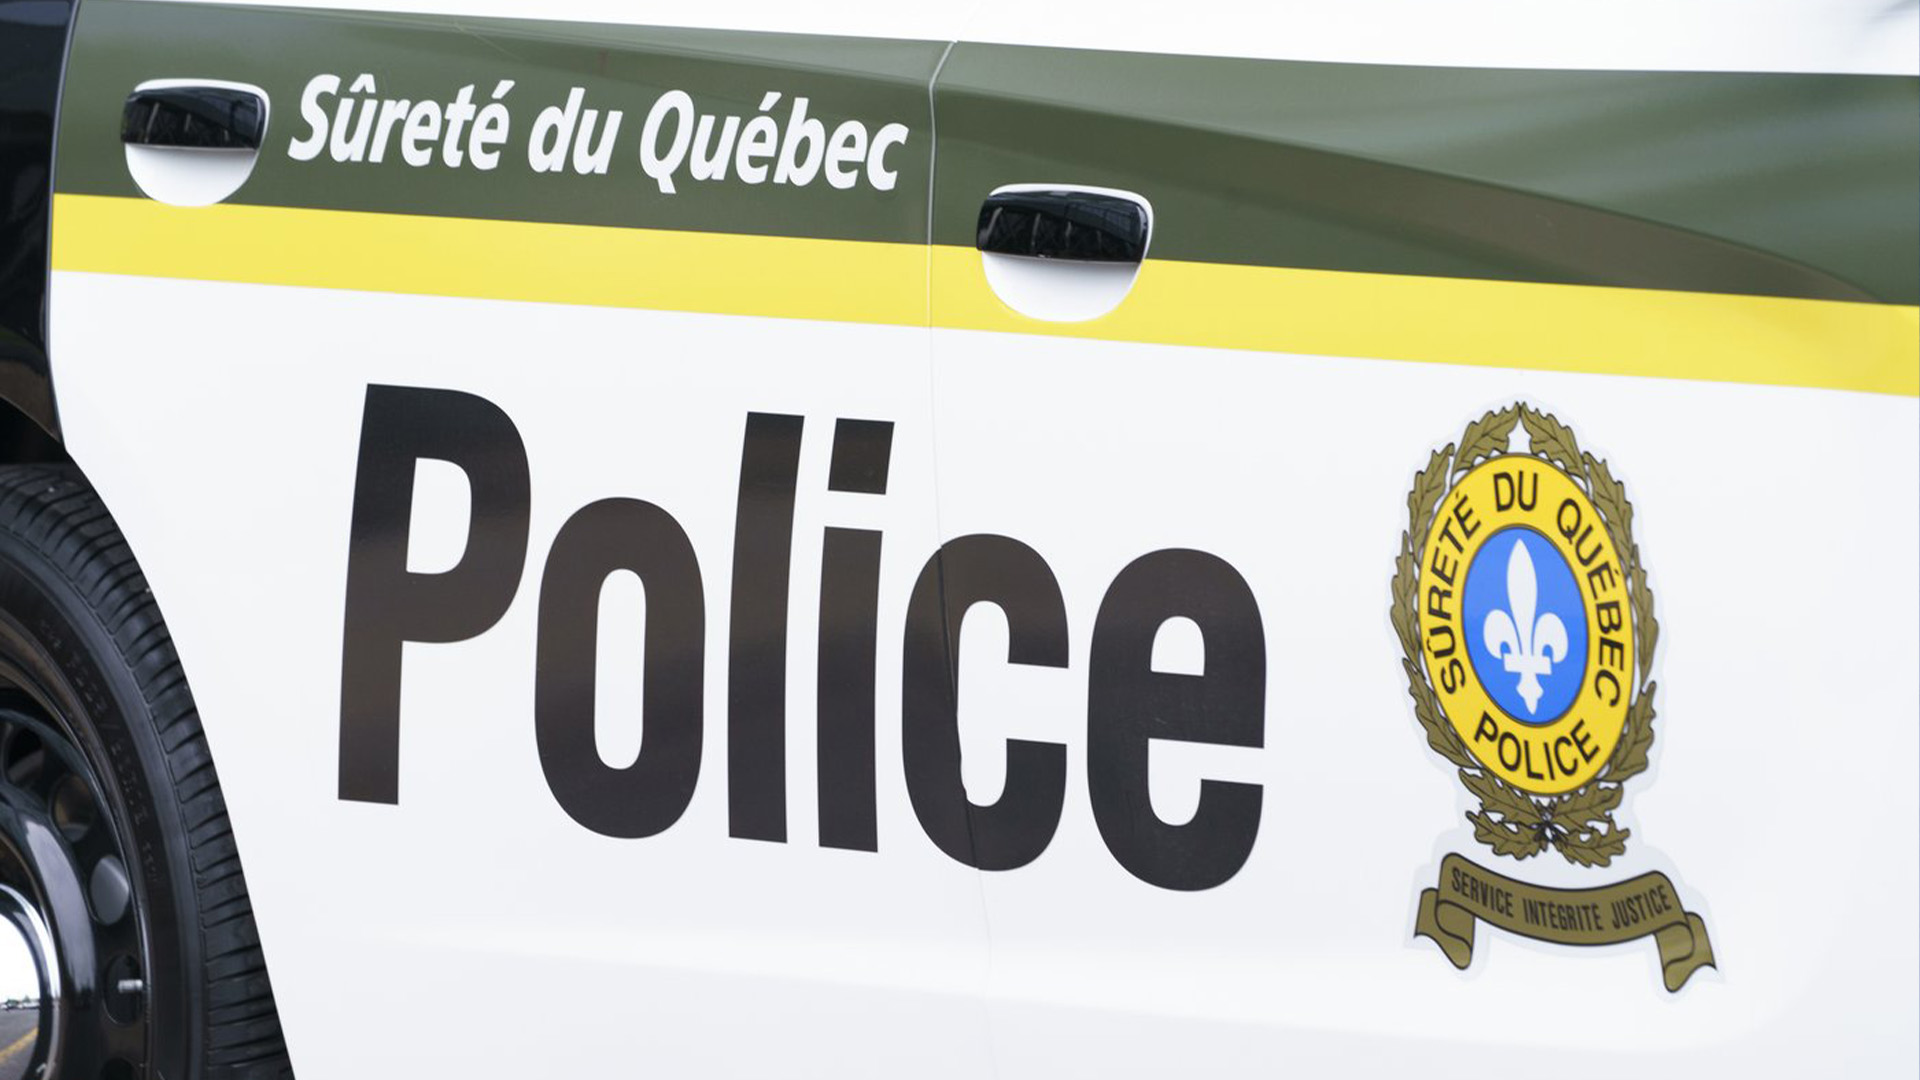 Une collision frontale impliquant deux véhicules utilitaires sport (VUS) est survenue dimanche soir à Saint-Roch-de-l'Achigan, dans la région de Lanaudière. 